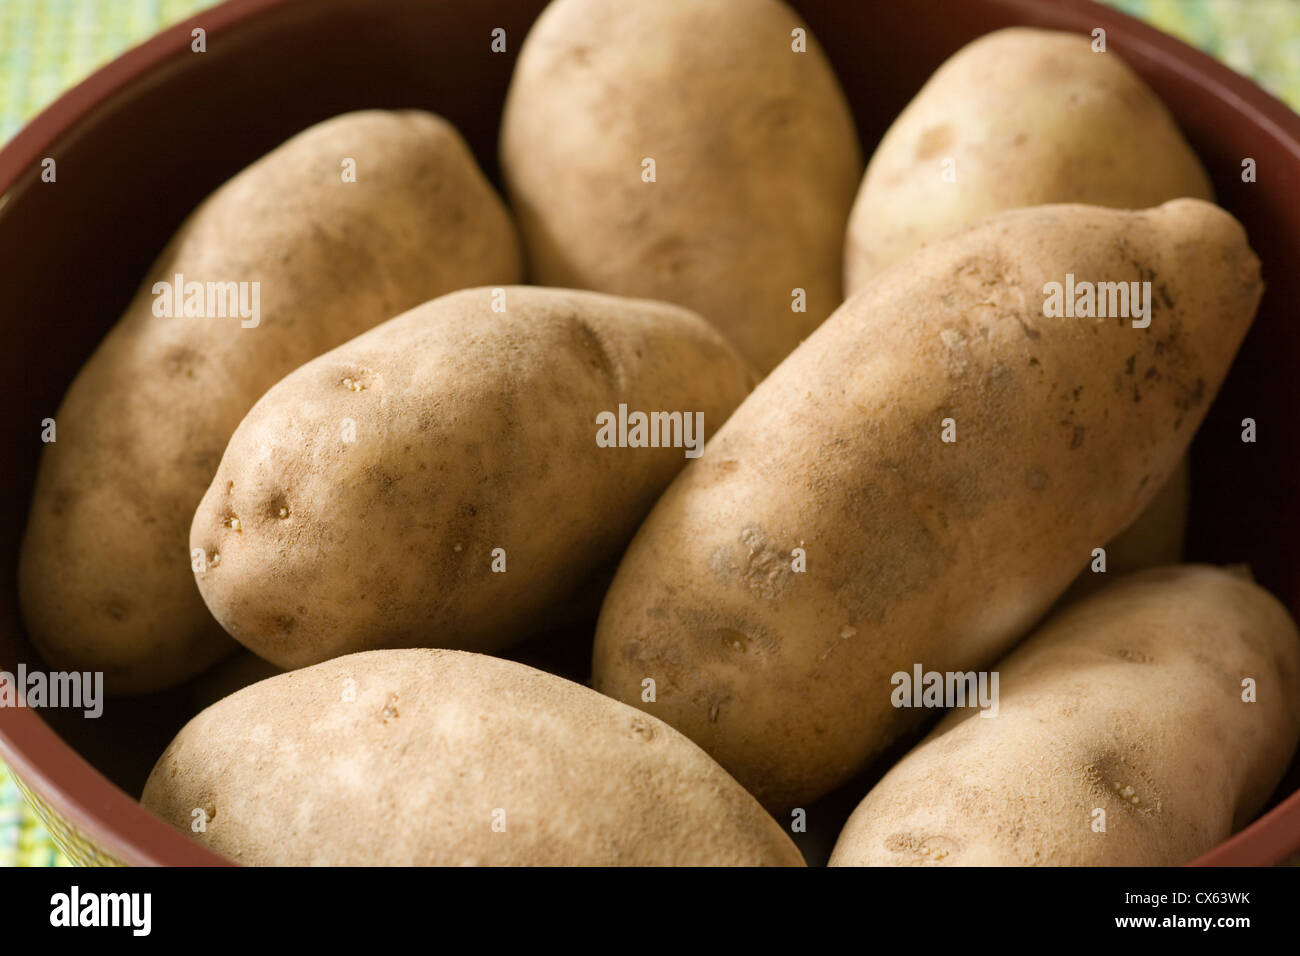 Ensemble, les matières, les pommes de terre roussâtres Banque D'Images